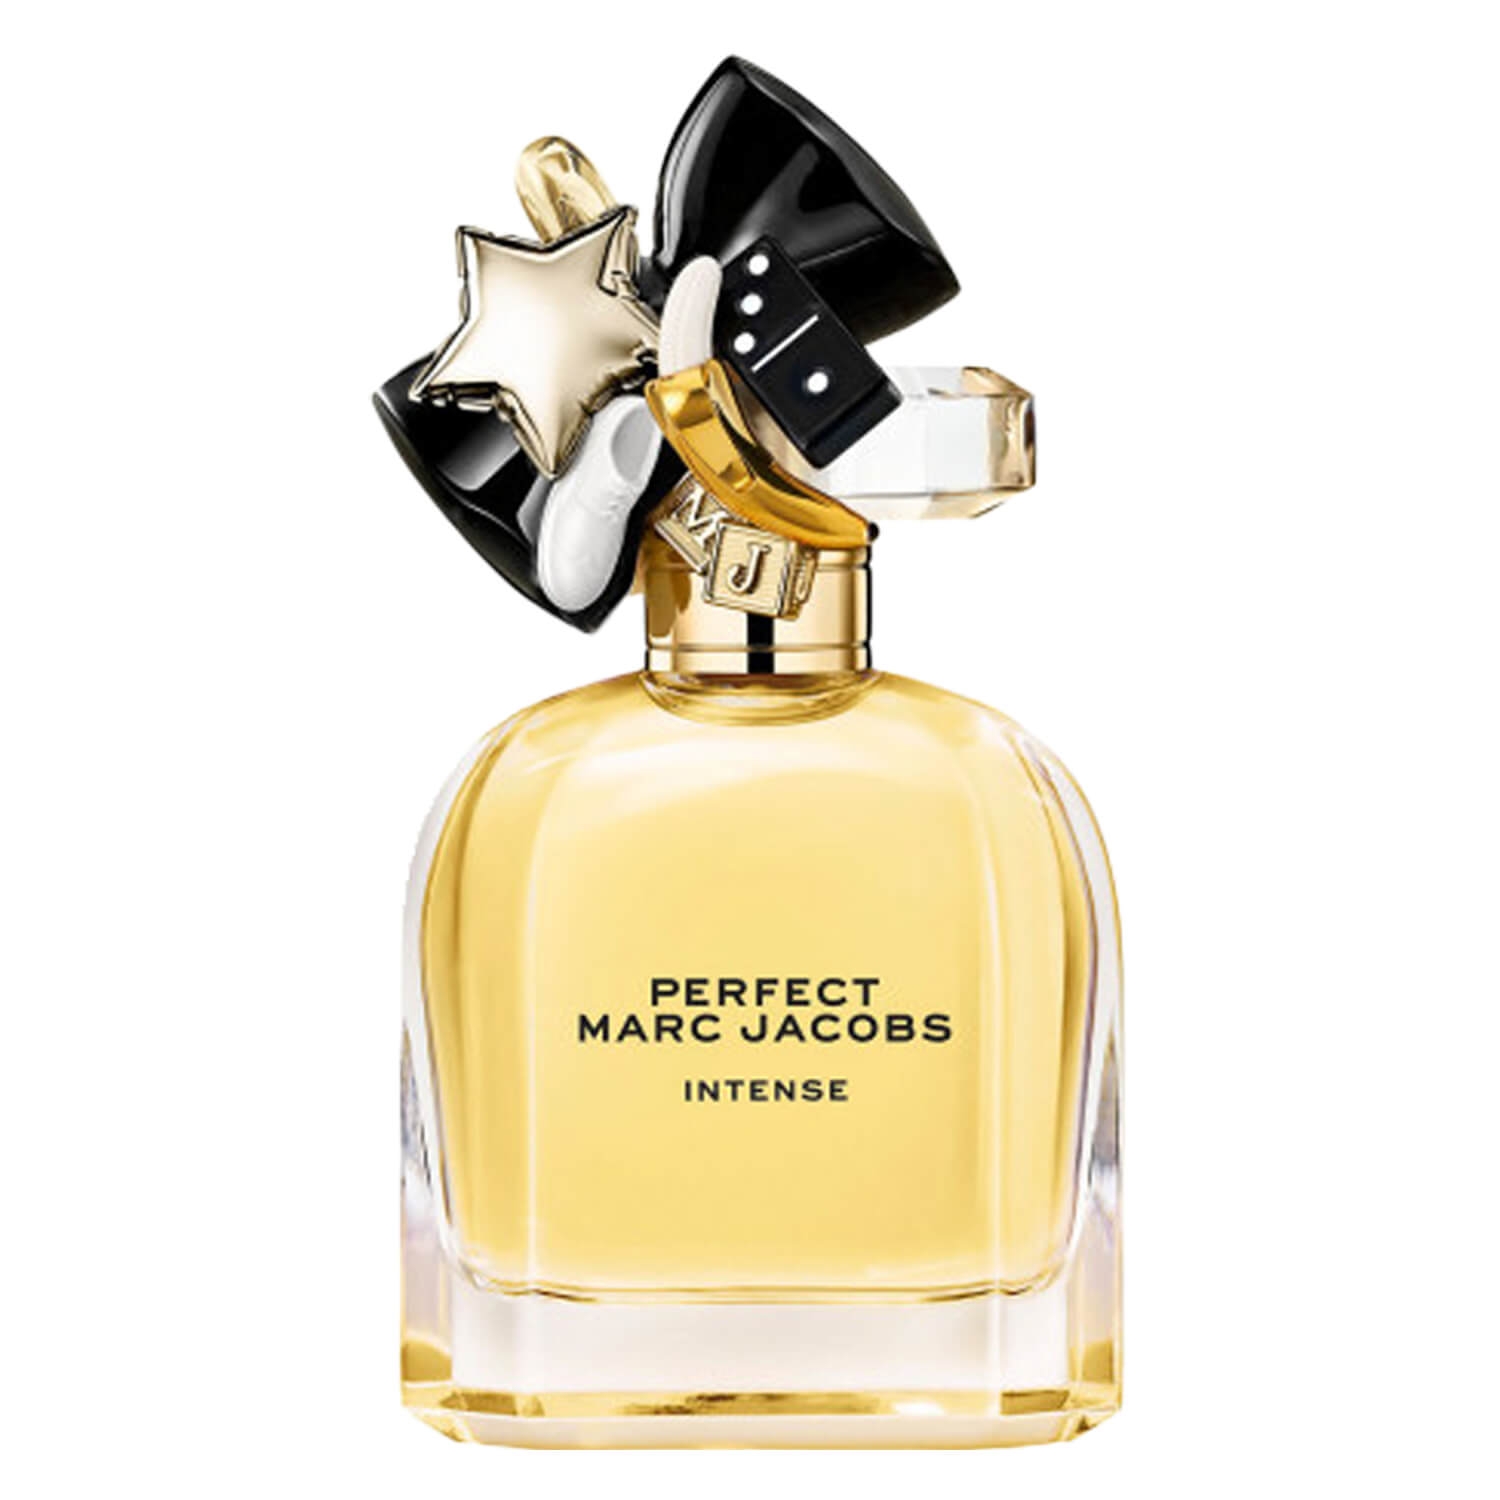 Produktbild von Marc Jacobs - Perfect Intense Eau de Parfum